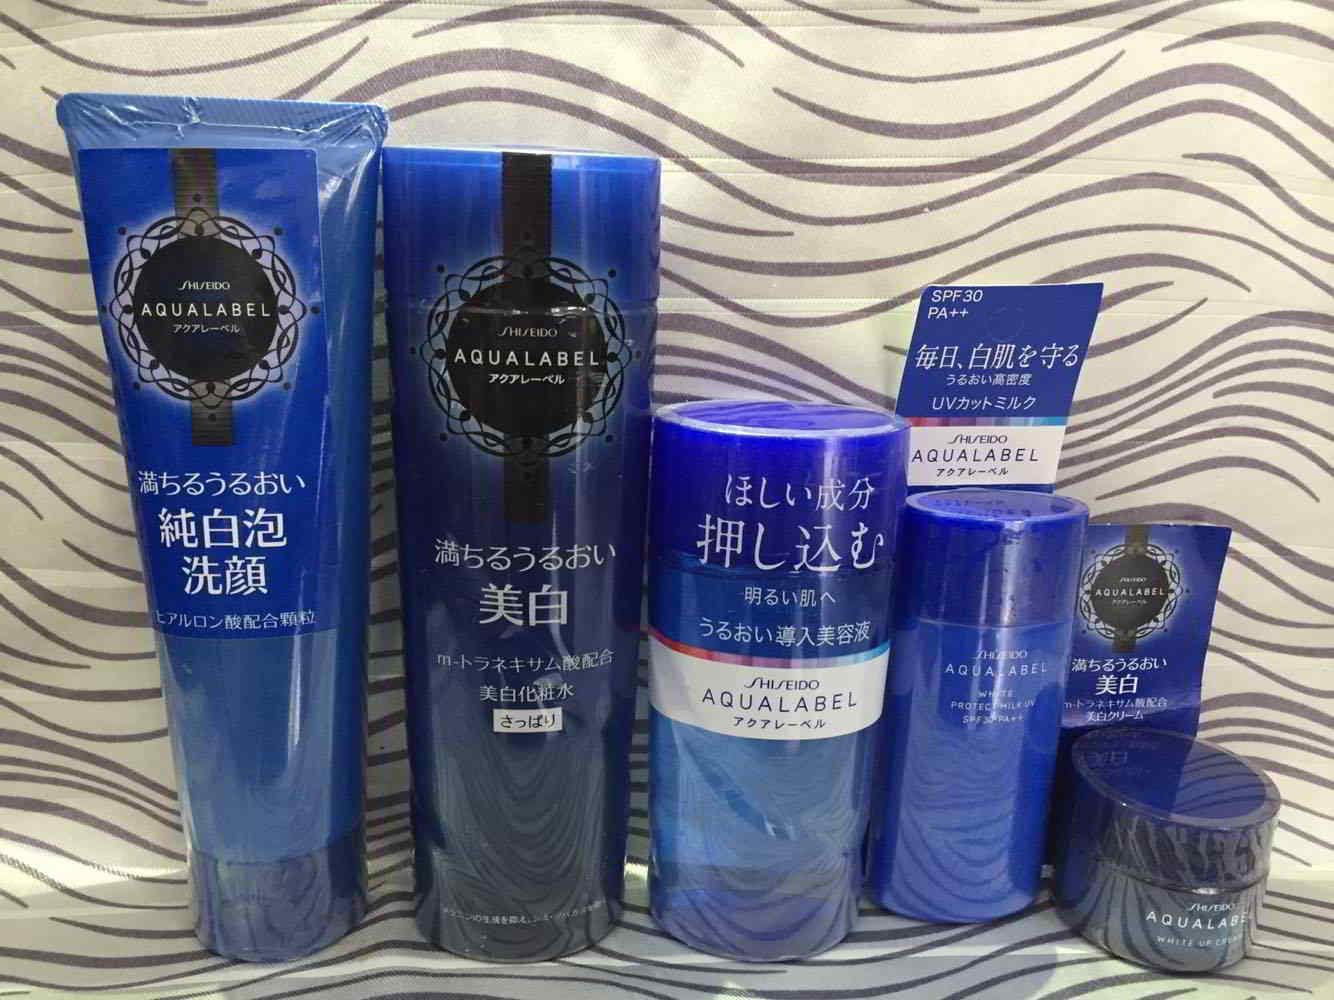 Dòng Shiseido Aqualabel có những sản phẩm nổi bật nào?  2